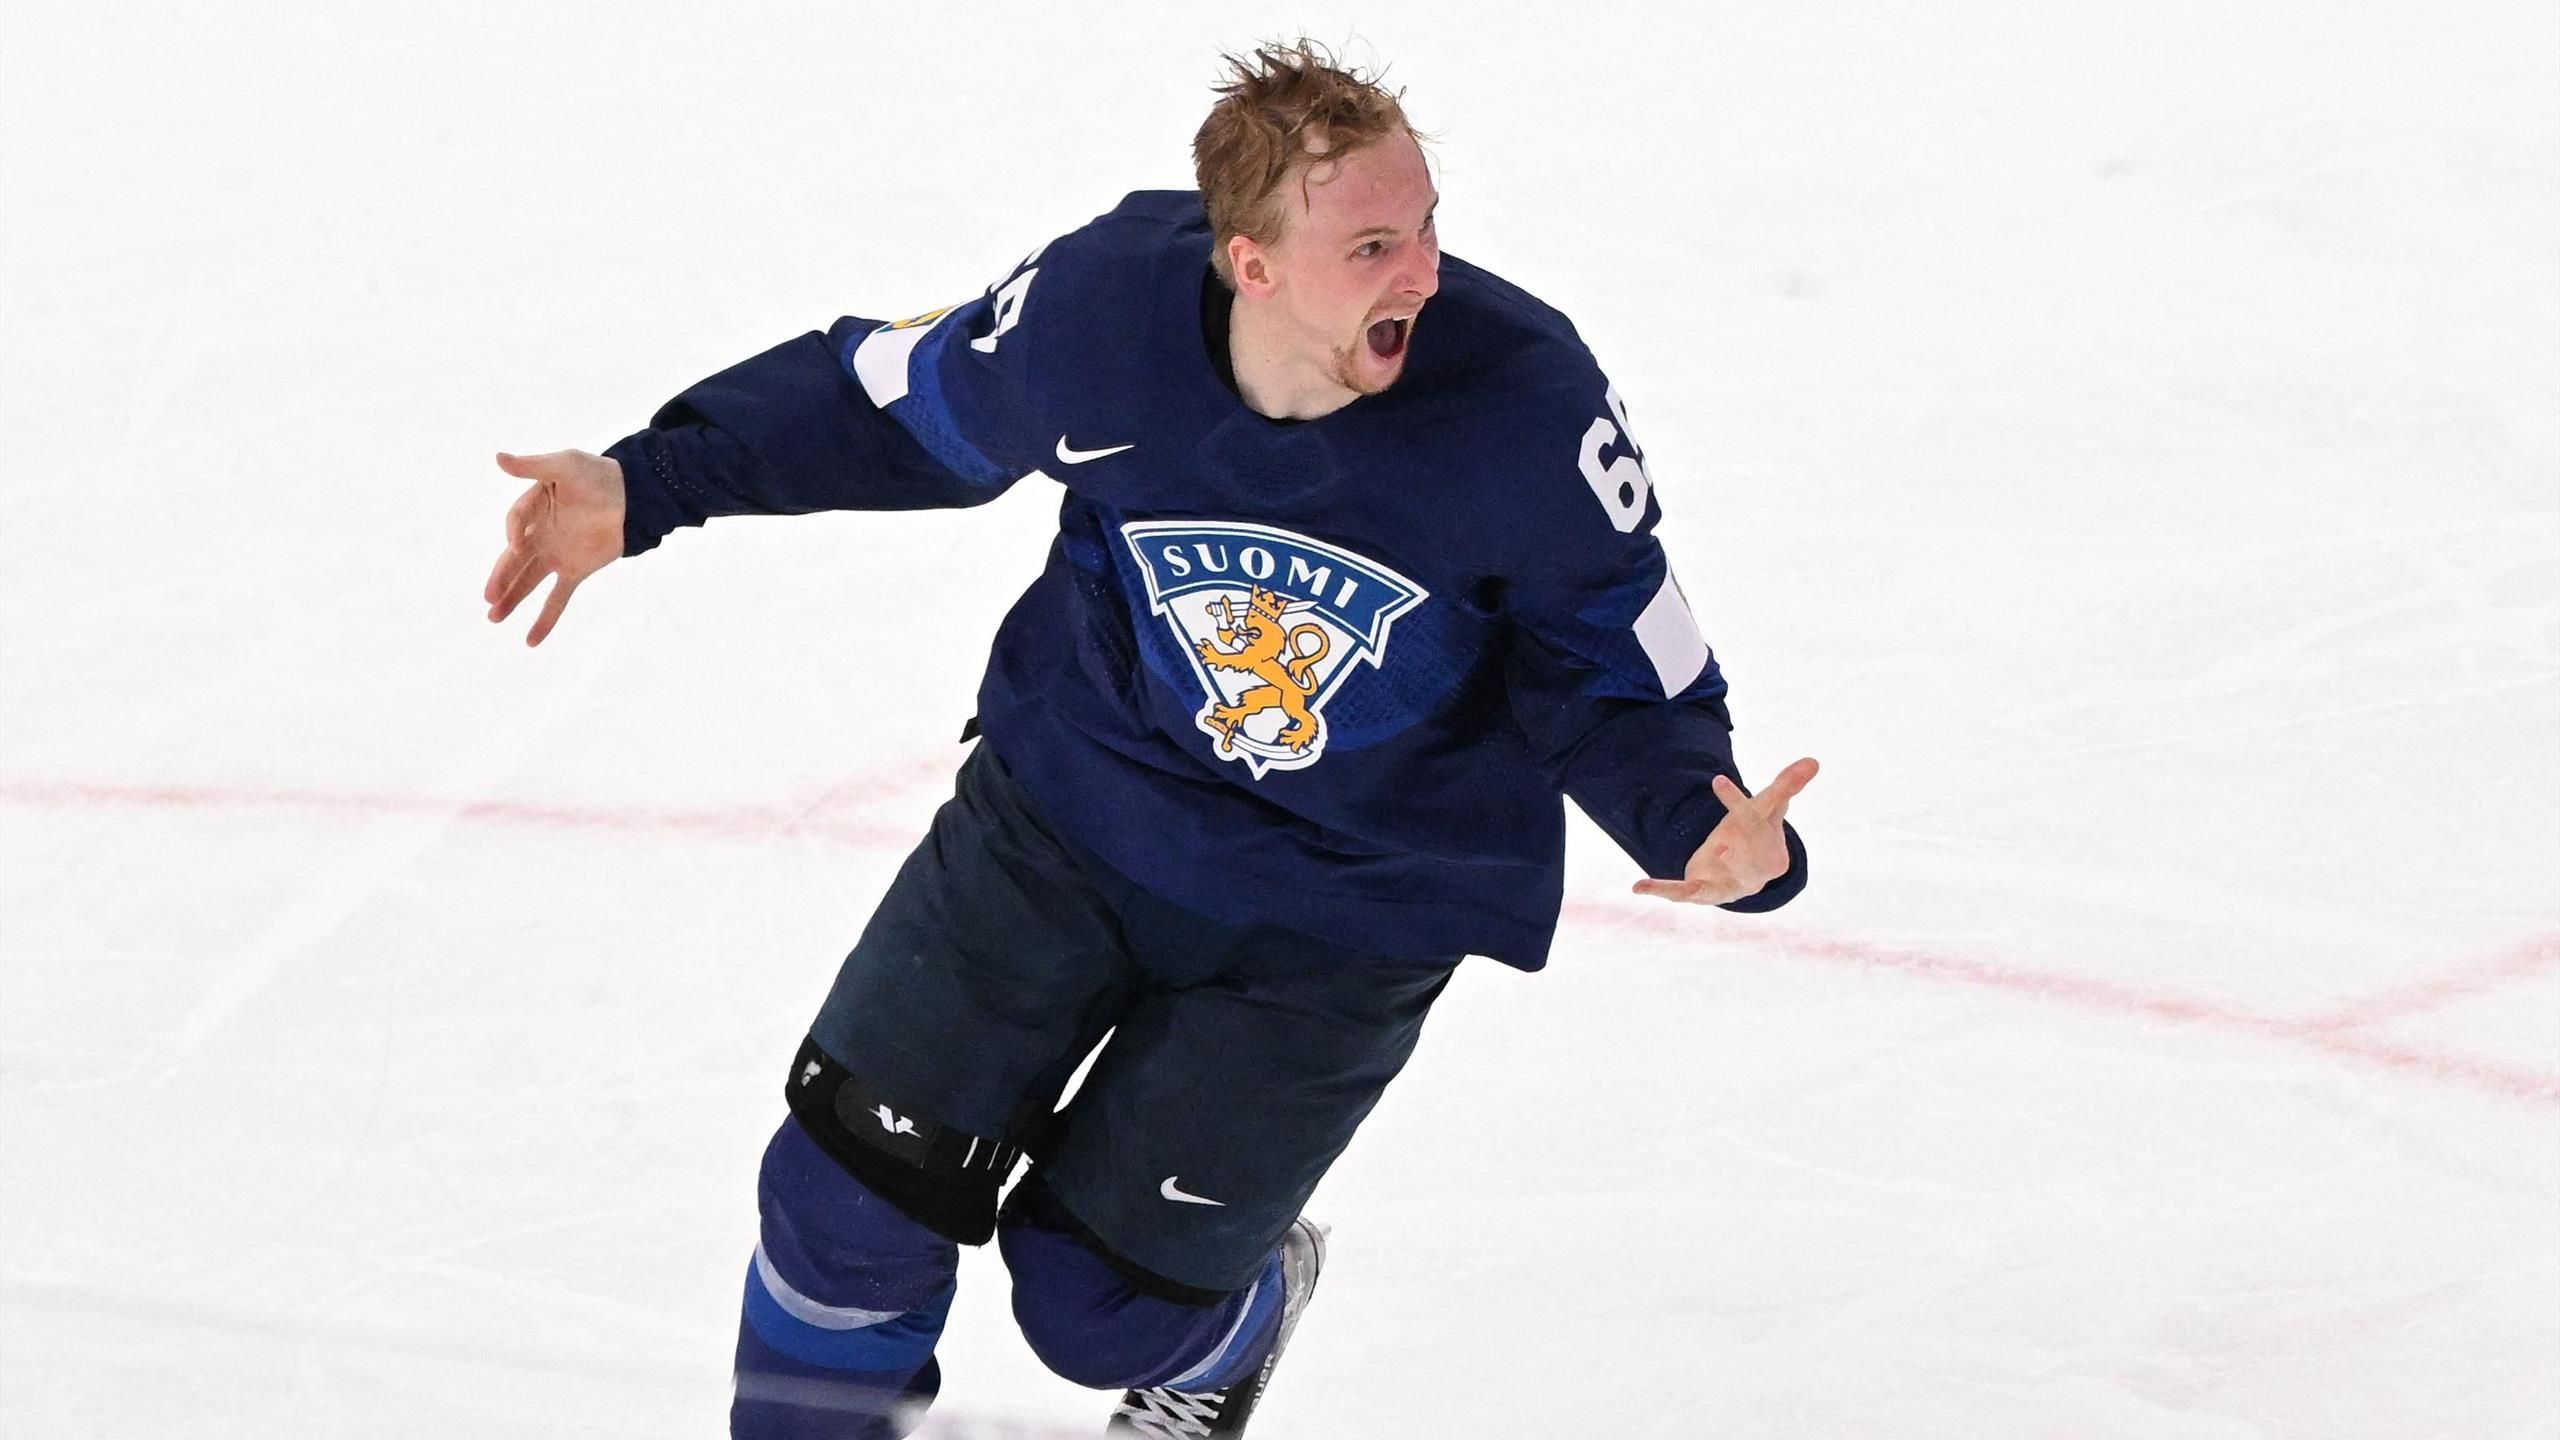 Eishockey-WM Finnland schlägt Kanada nach Thriller im Finale und krönt sich zum Weltmeister - historisches Double